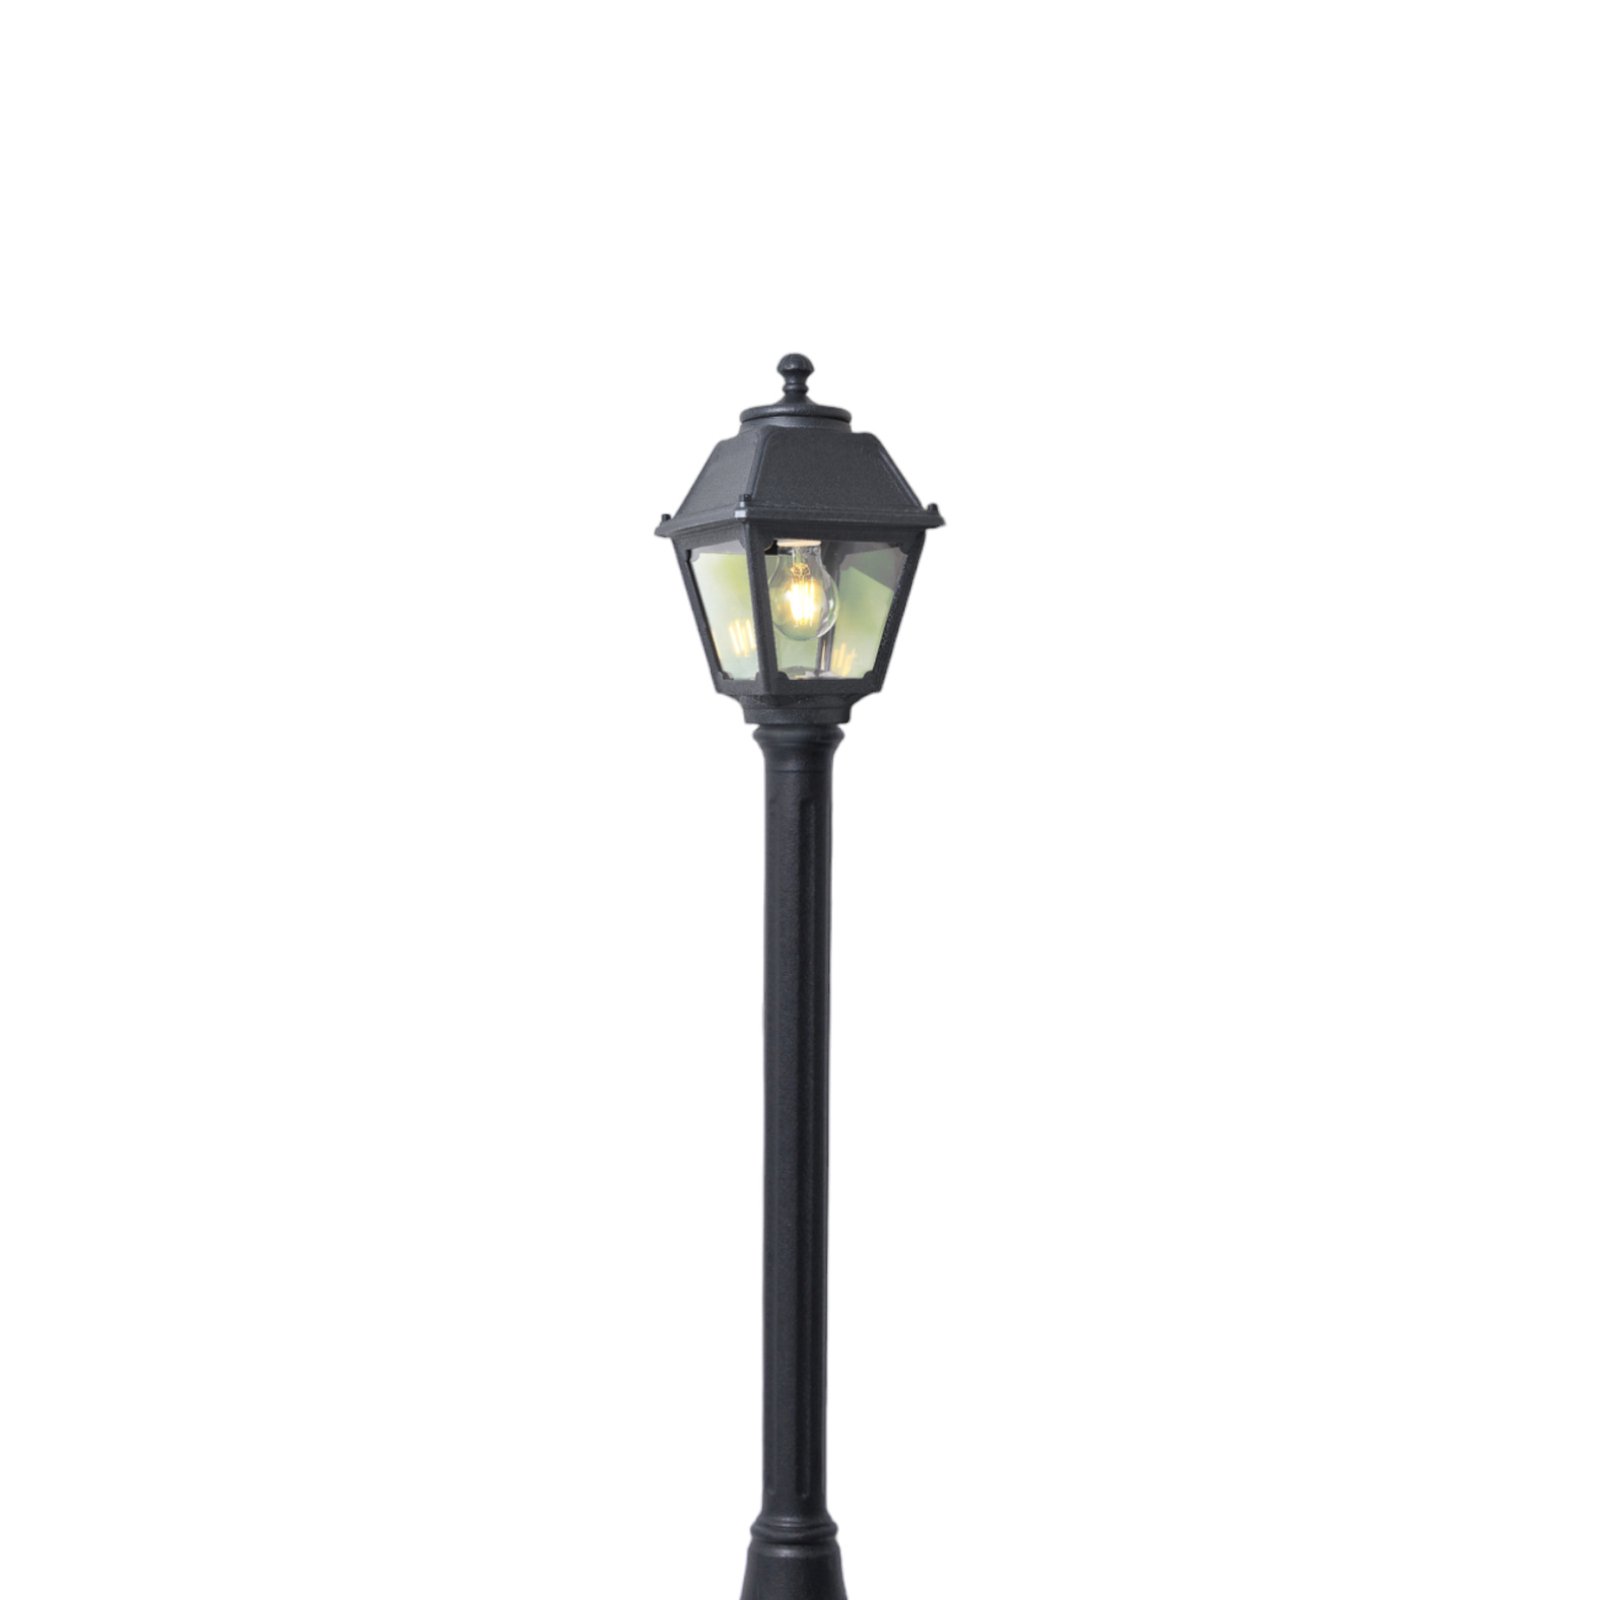 Mizar/Mary vägledningslampa, svart, genomskinligt lock, 2 700 K